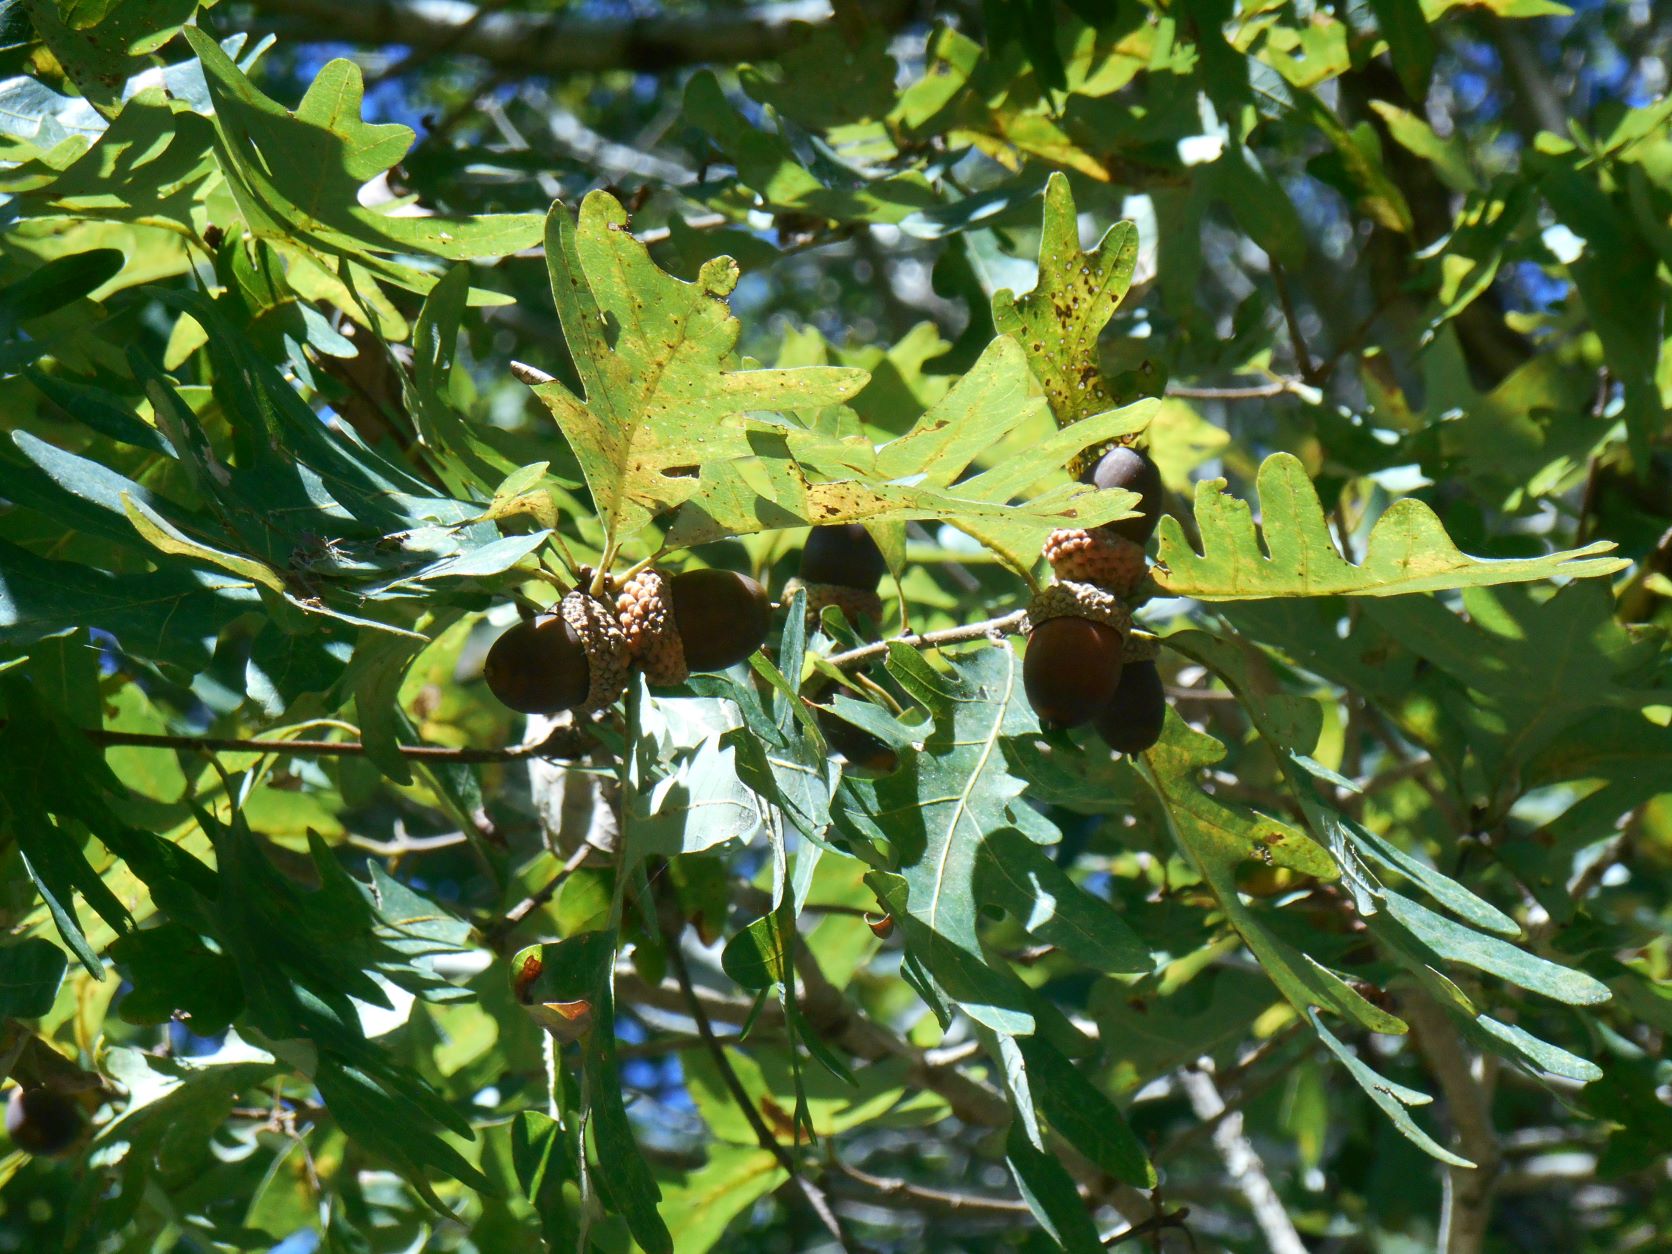 types of oak trees